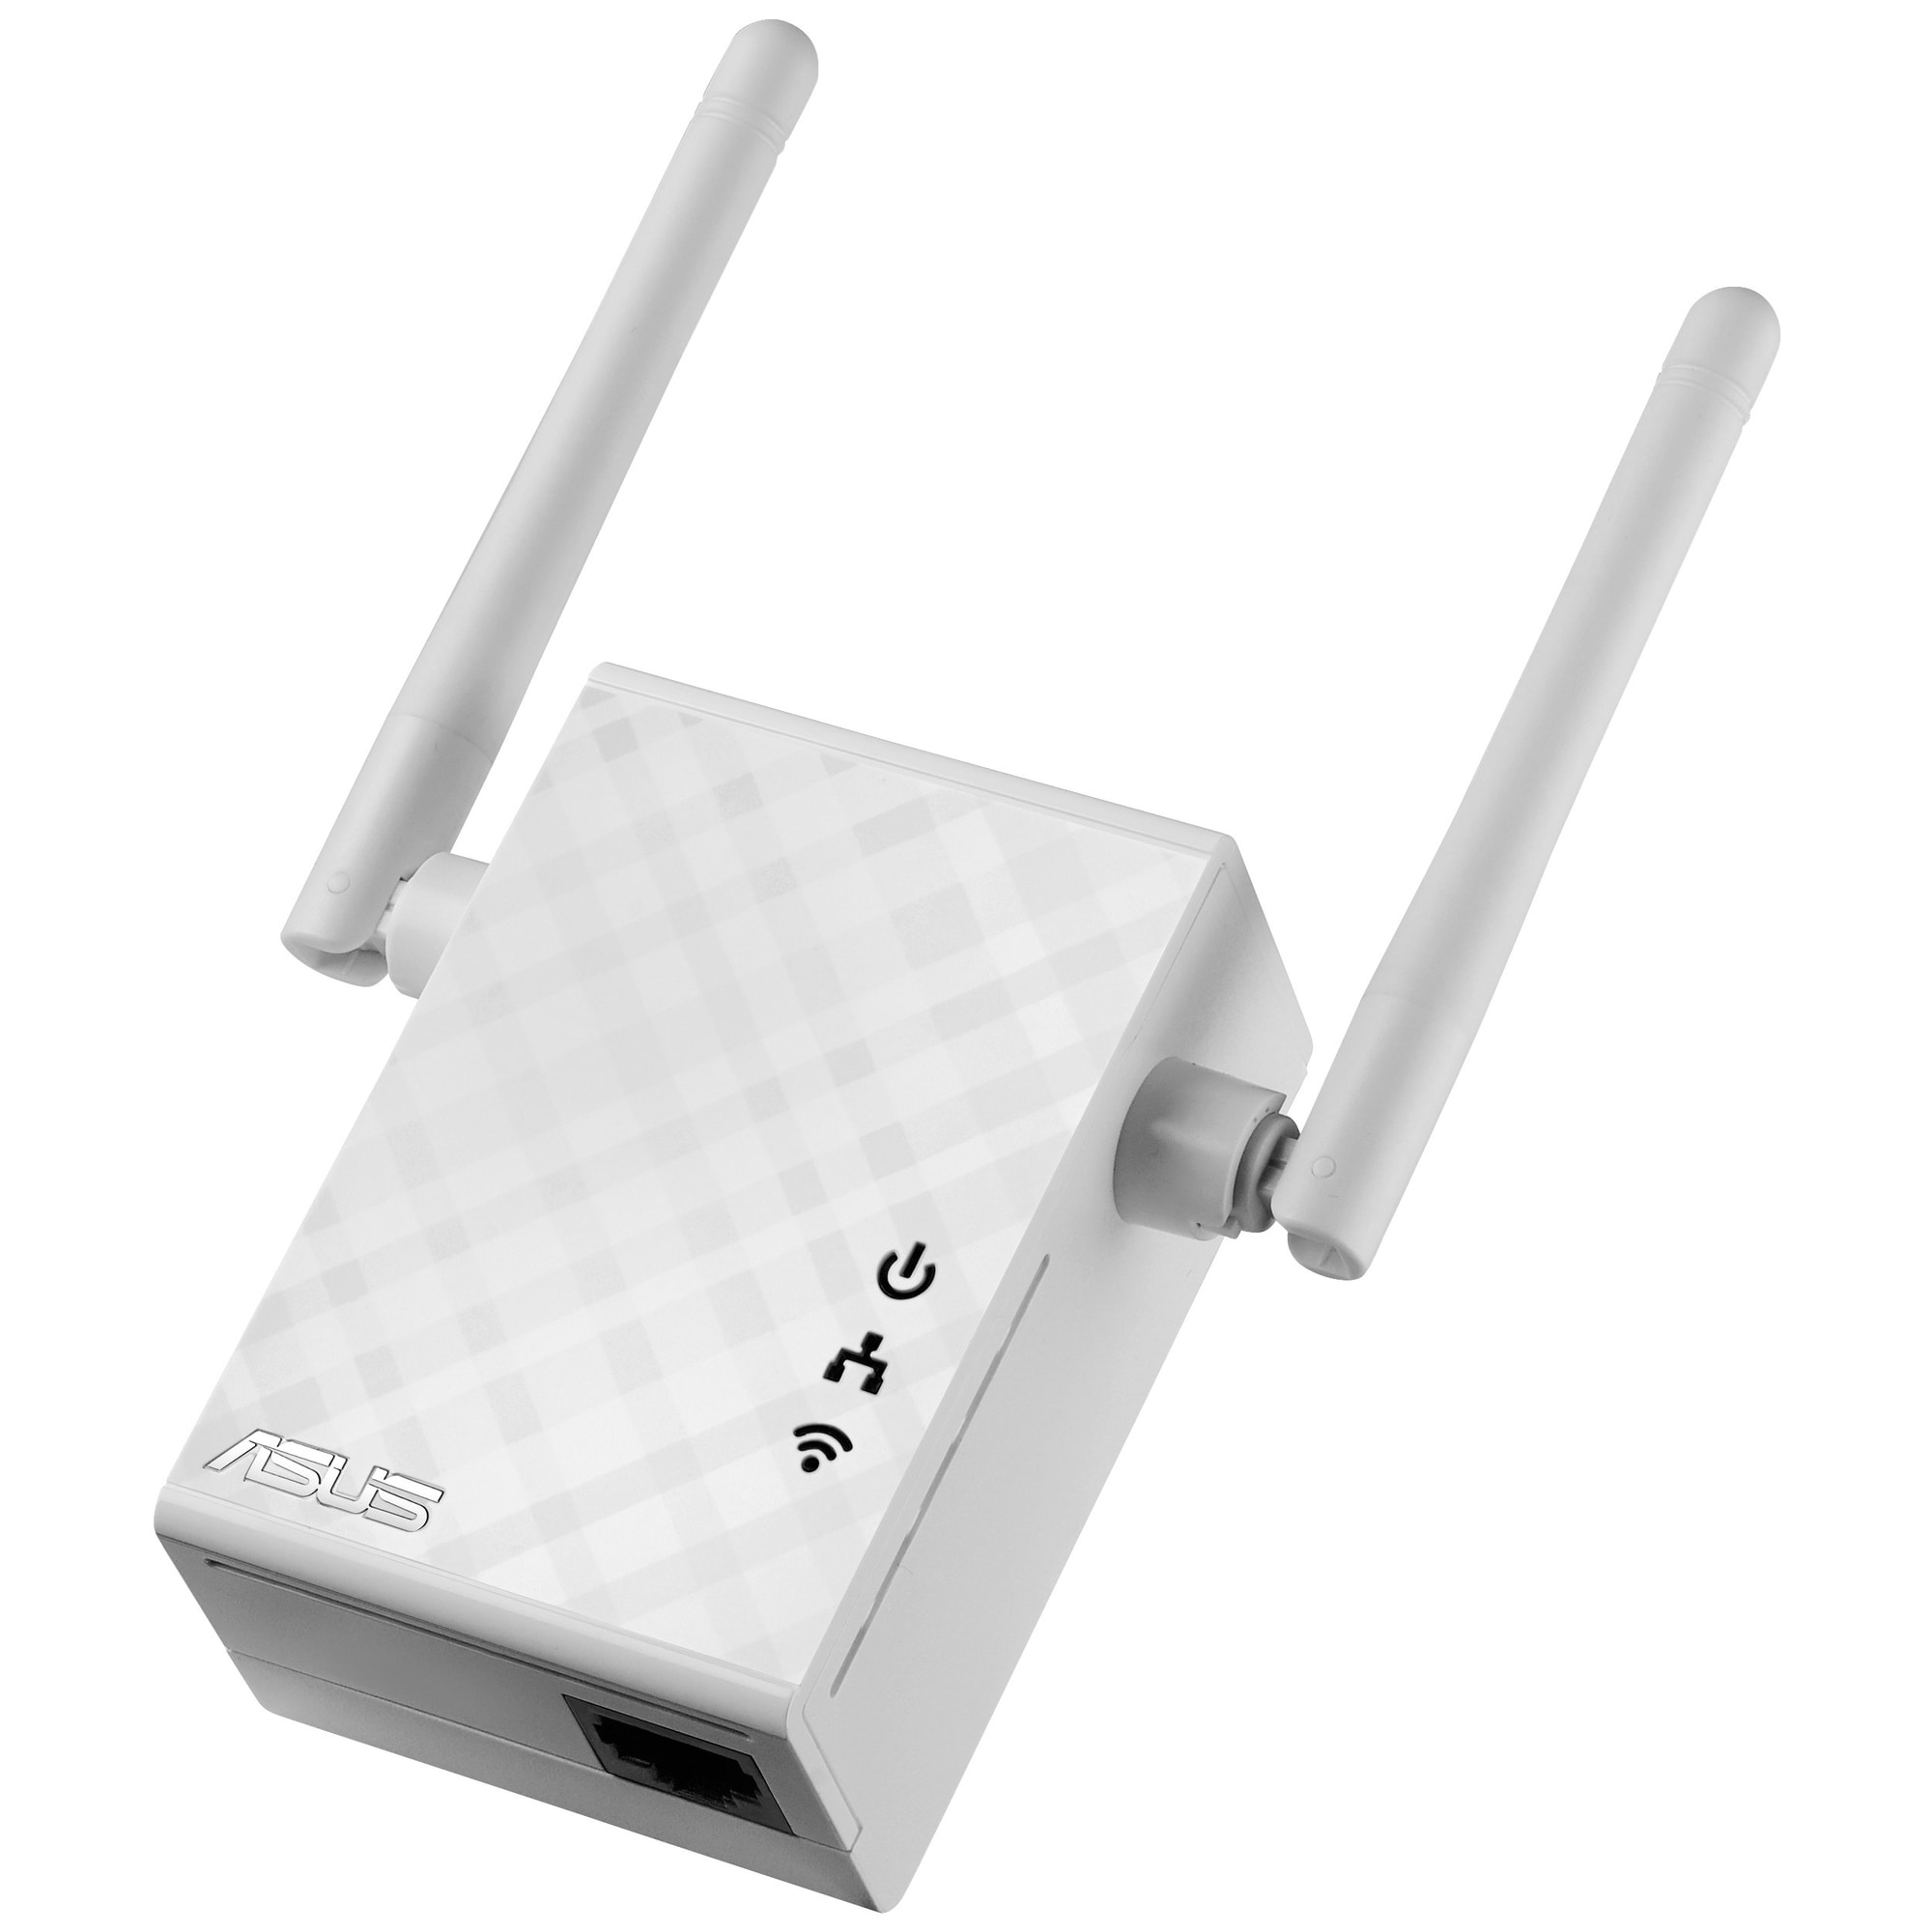 Asus RP-N12 N300 wi-fi range extender | Elgiganten